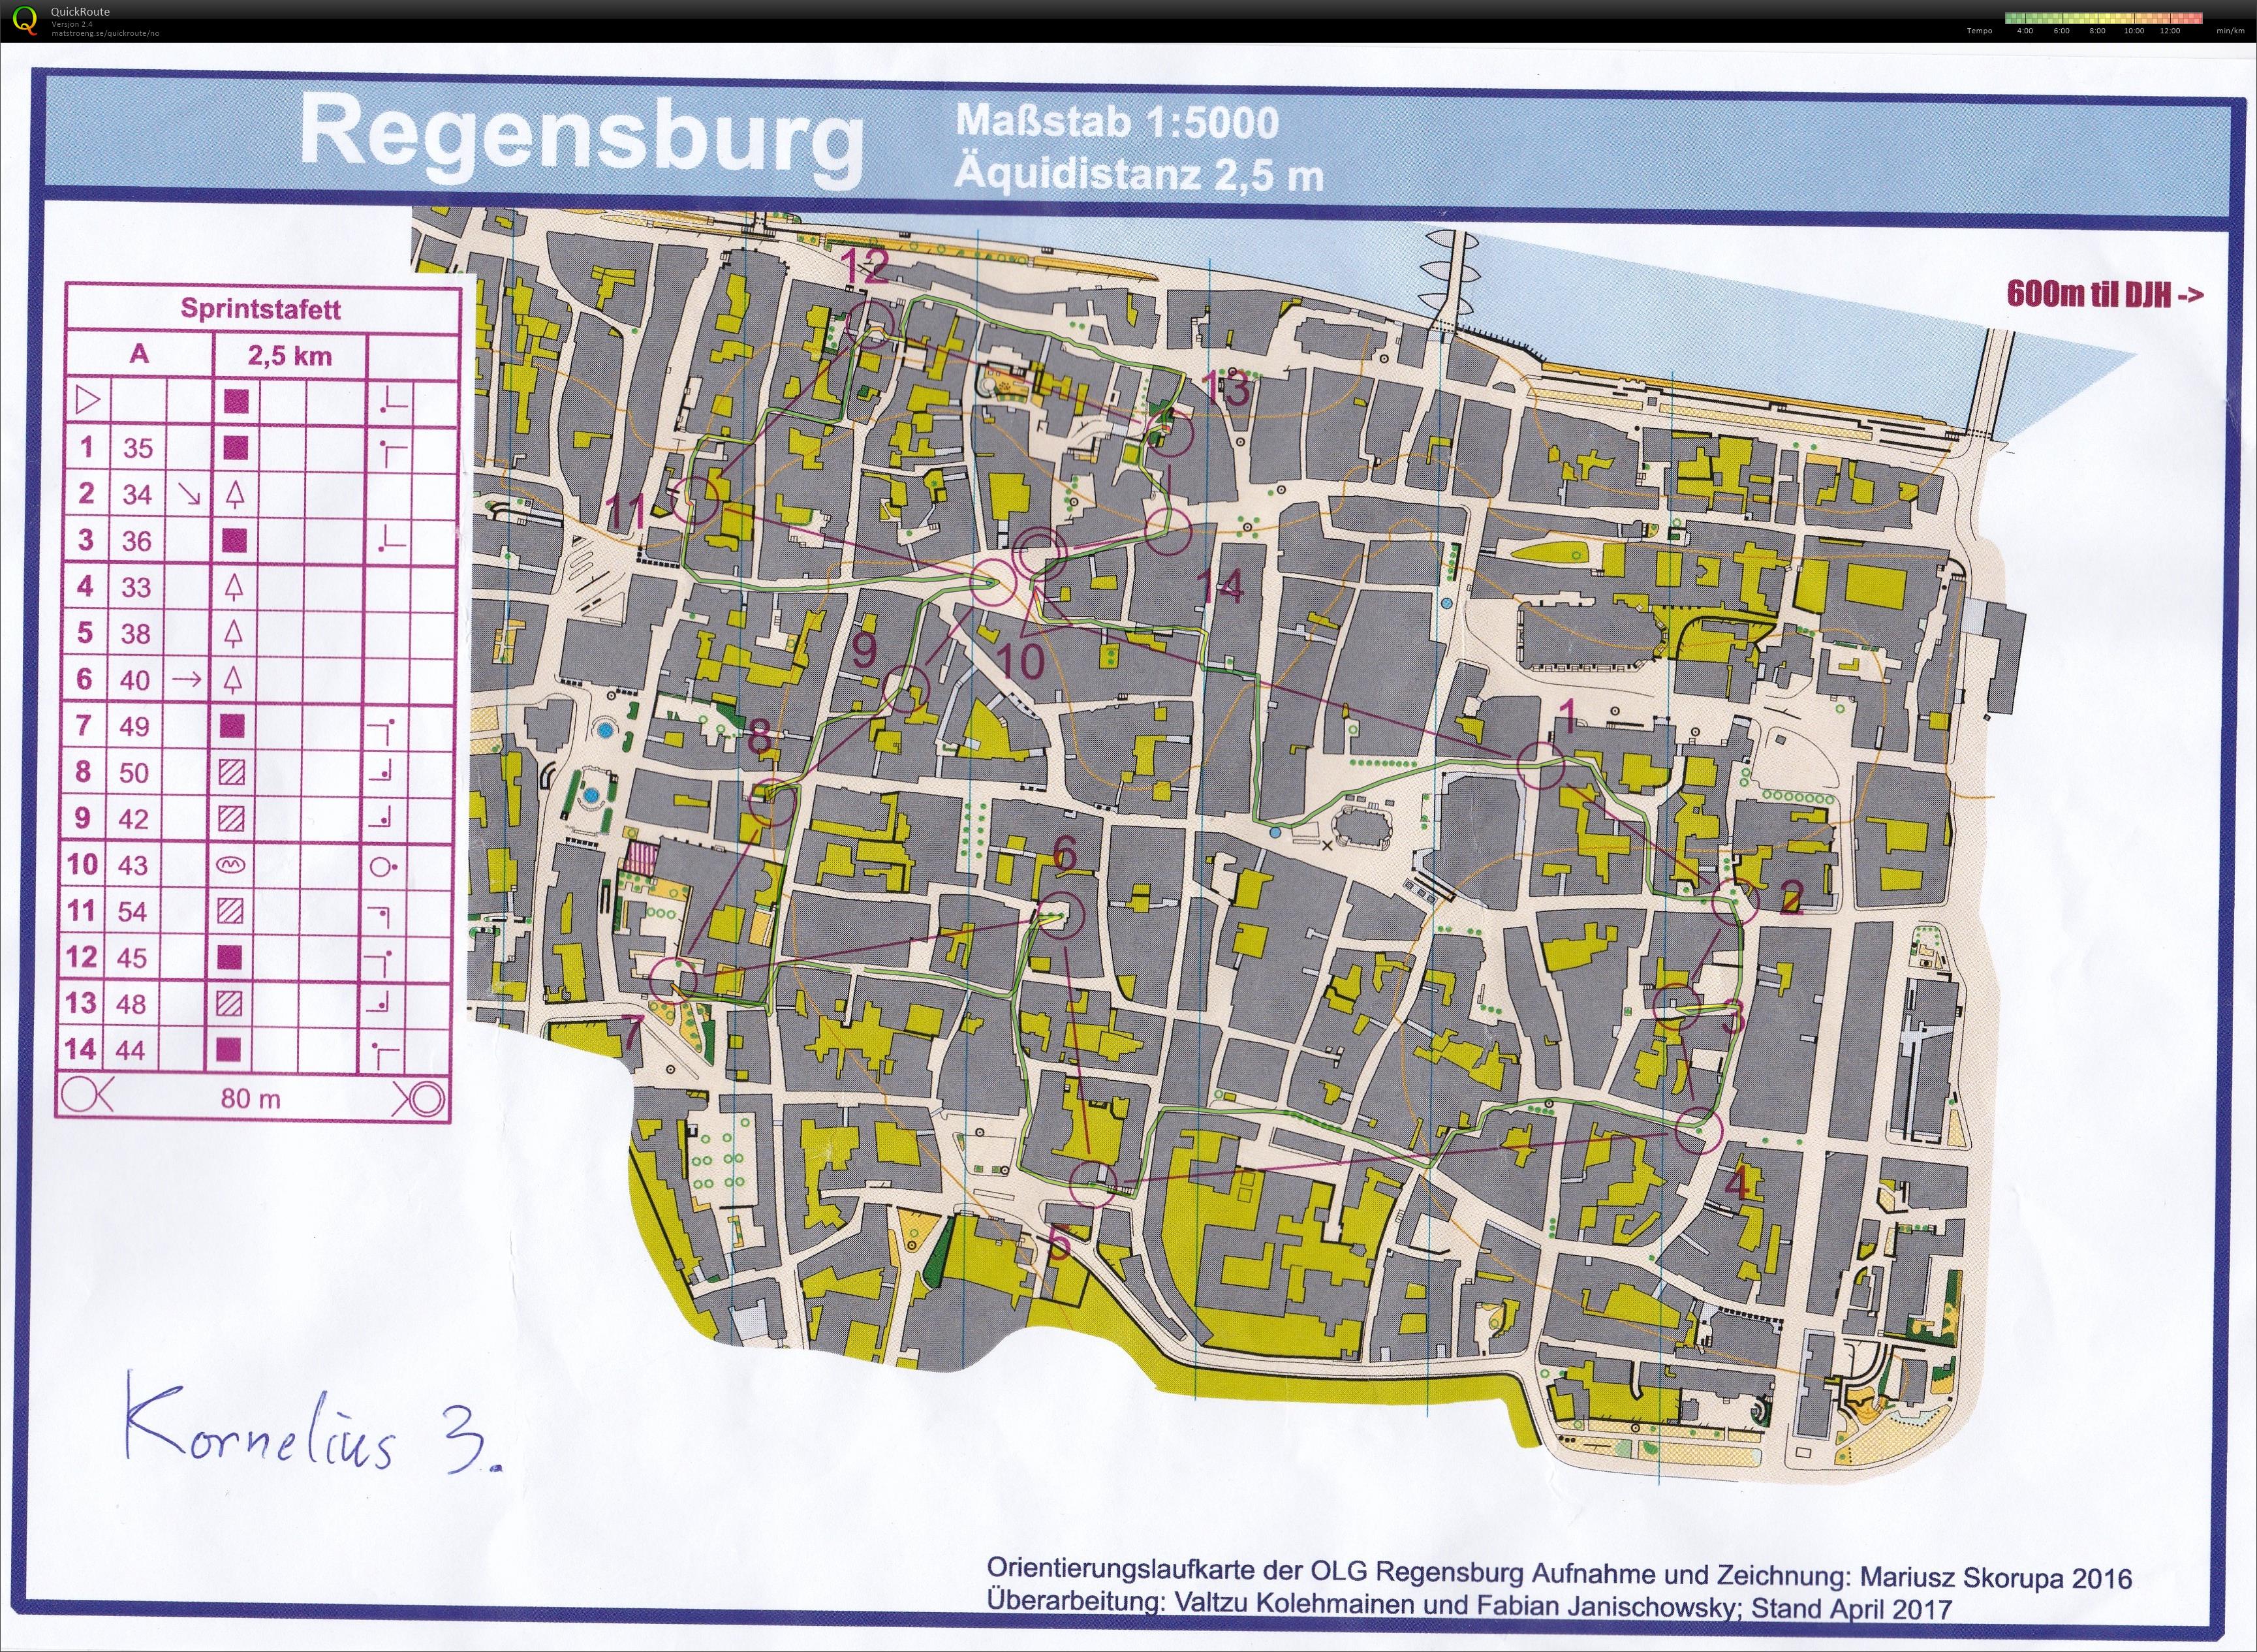 Sprintstafett Regensburg 3.etp (2017-10-02)